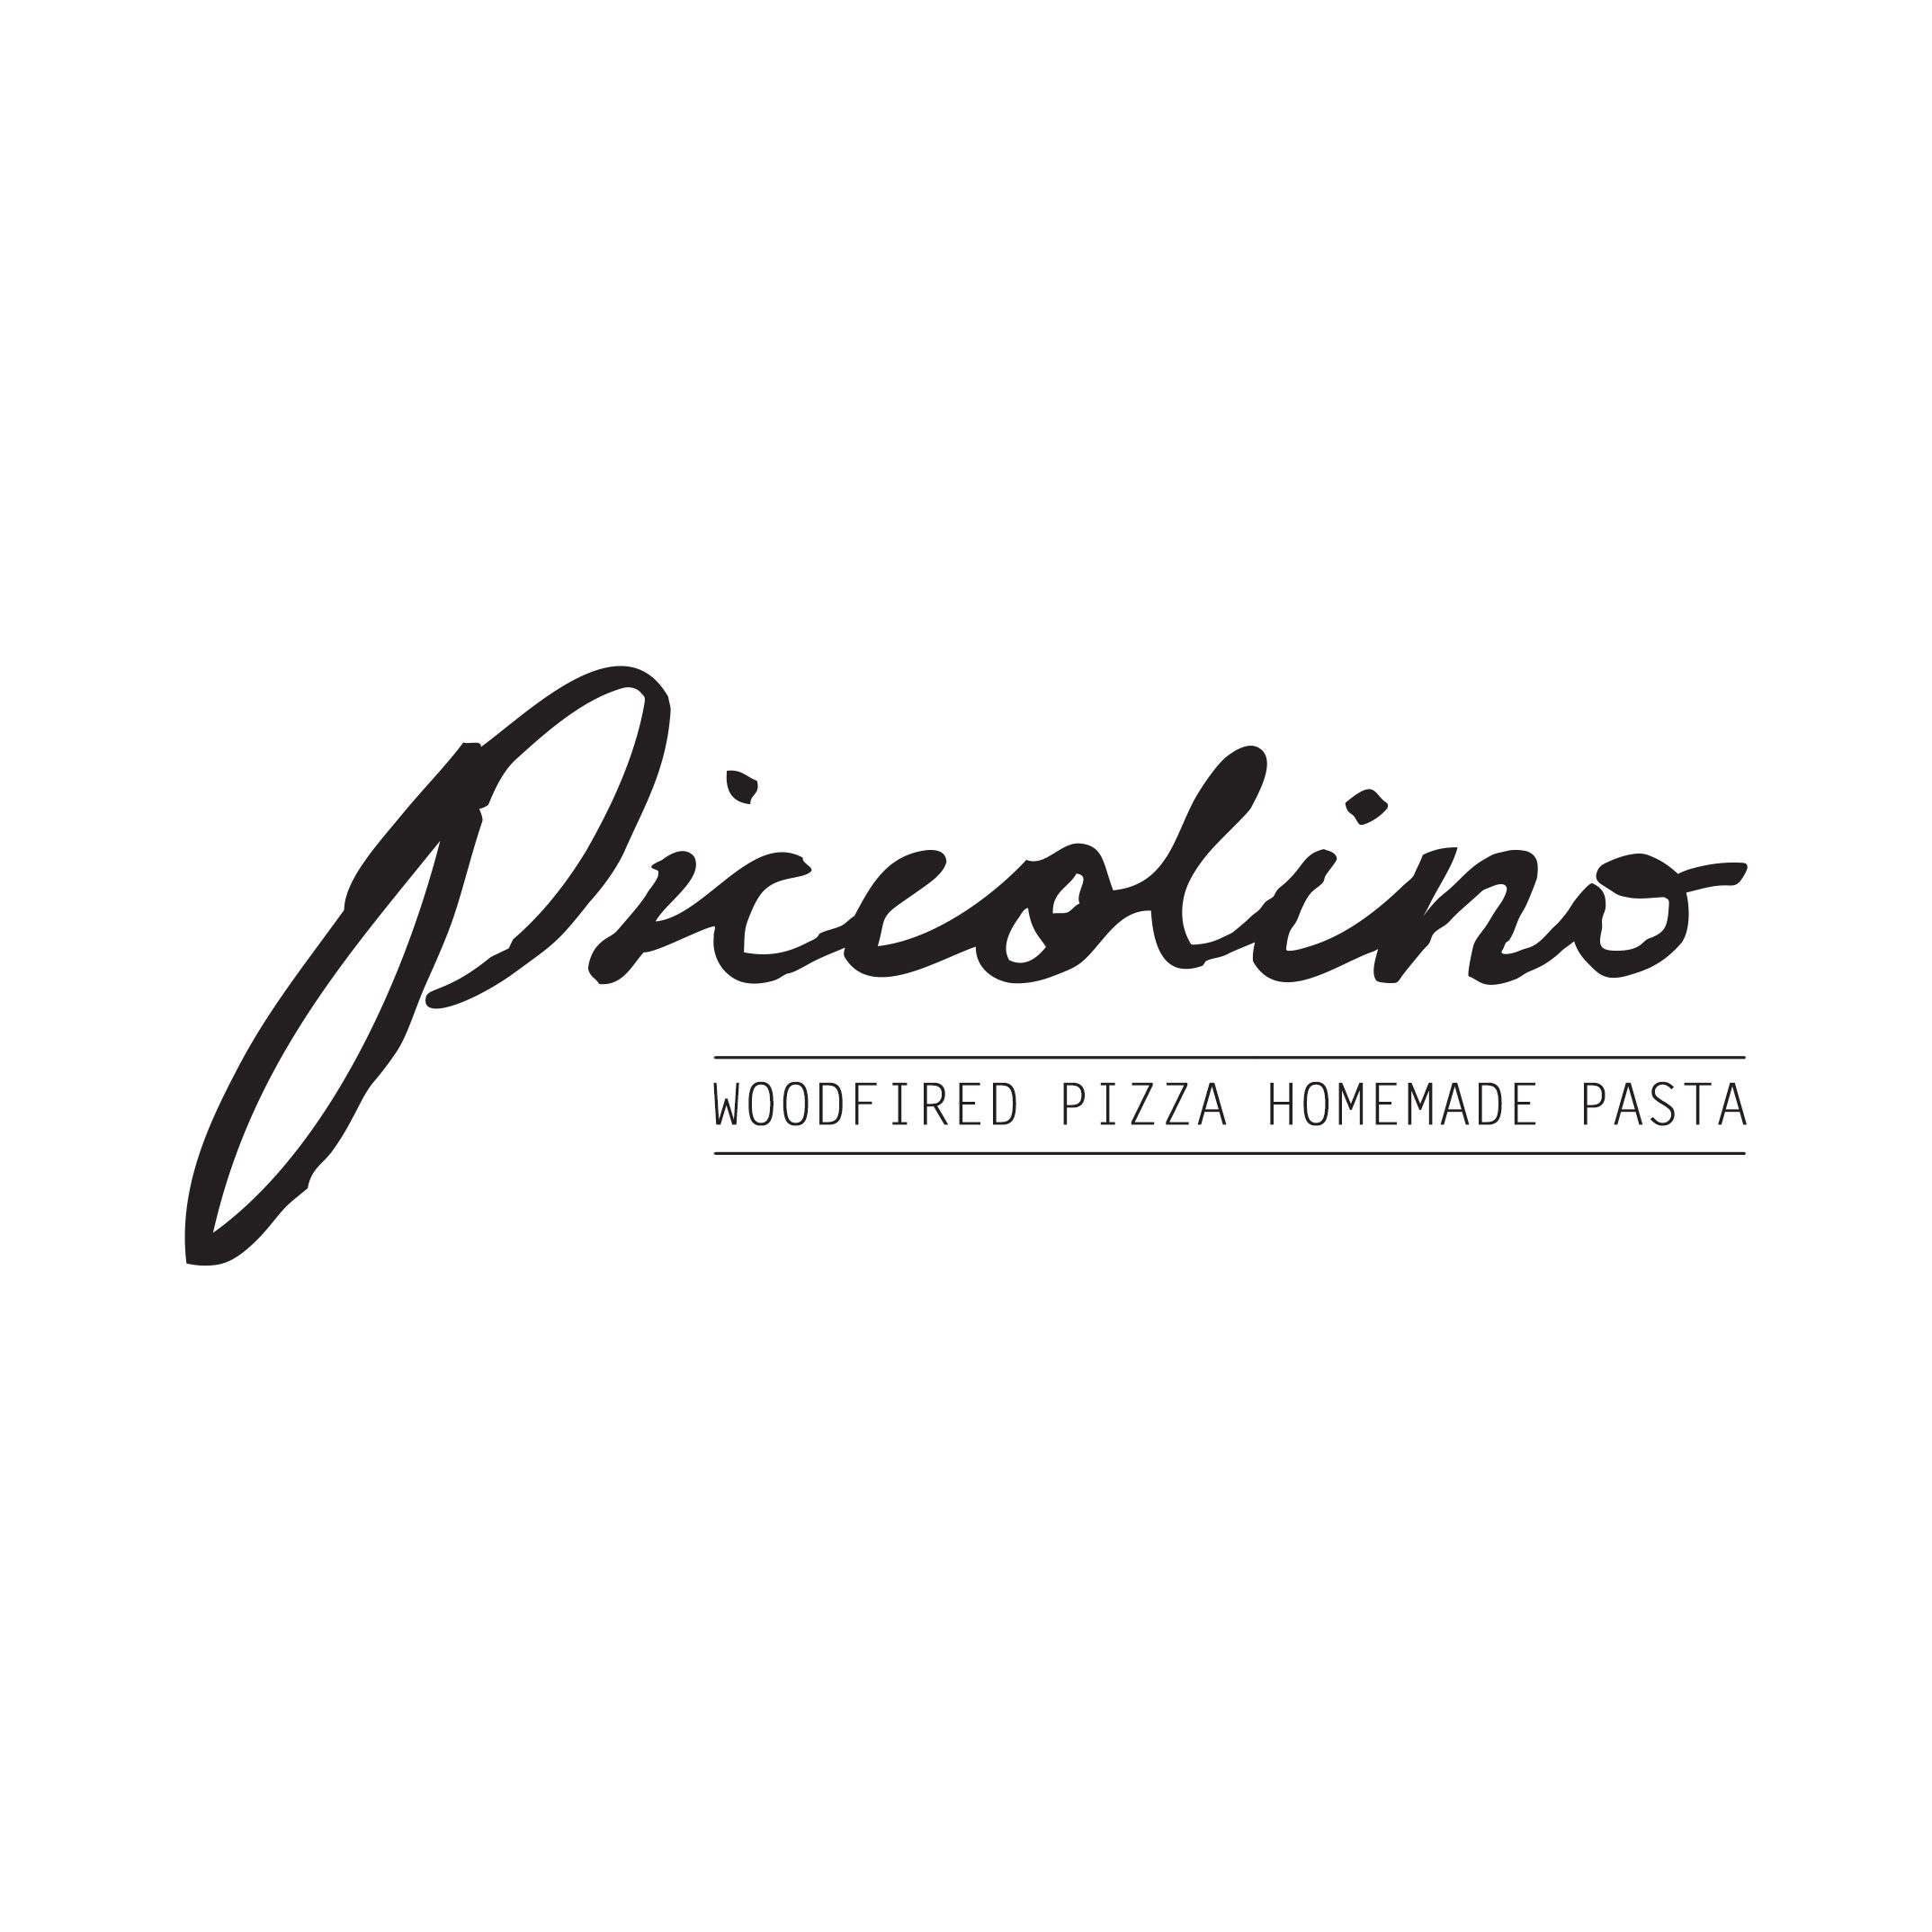 Piccolino Woodfired Pizza & Trattoria logo - Black (3)